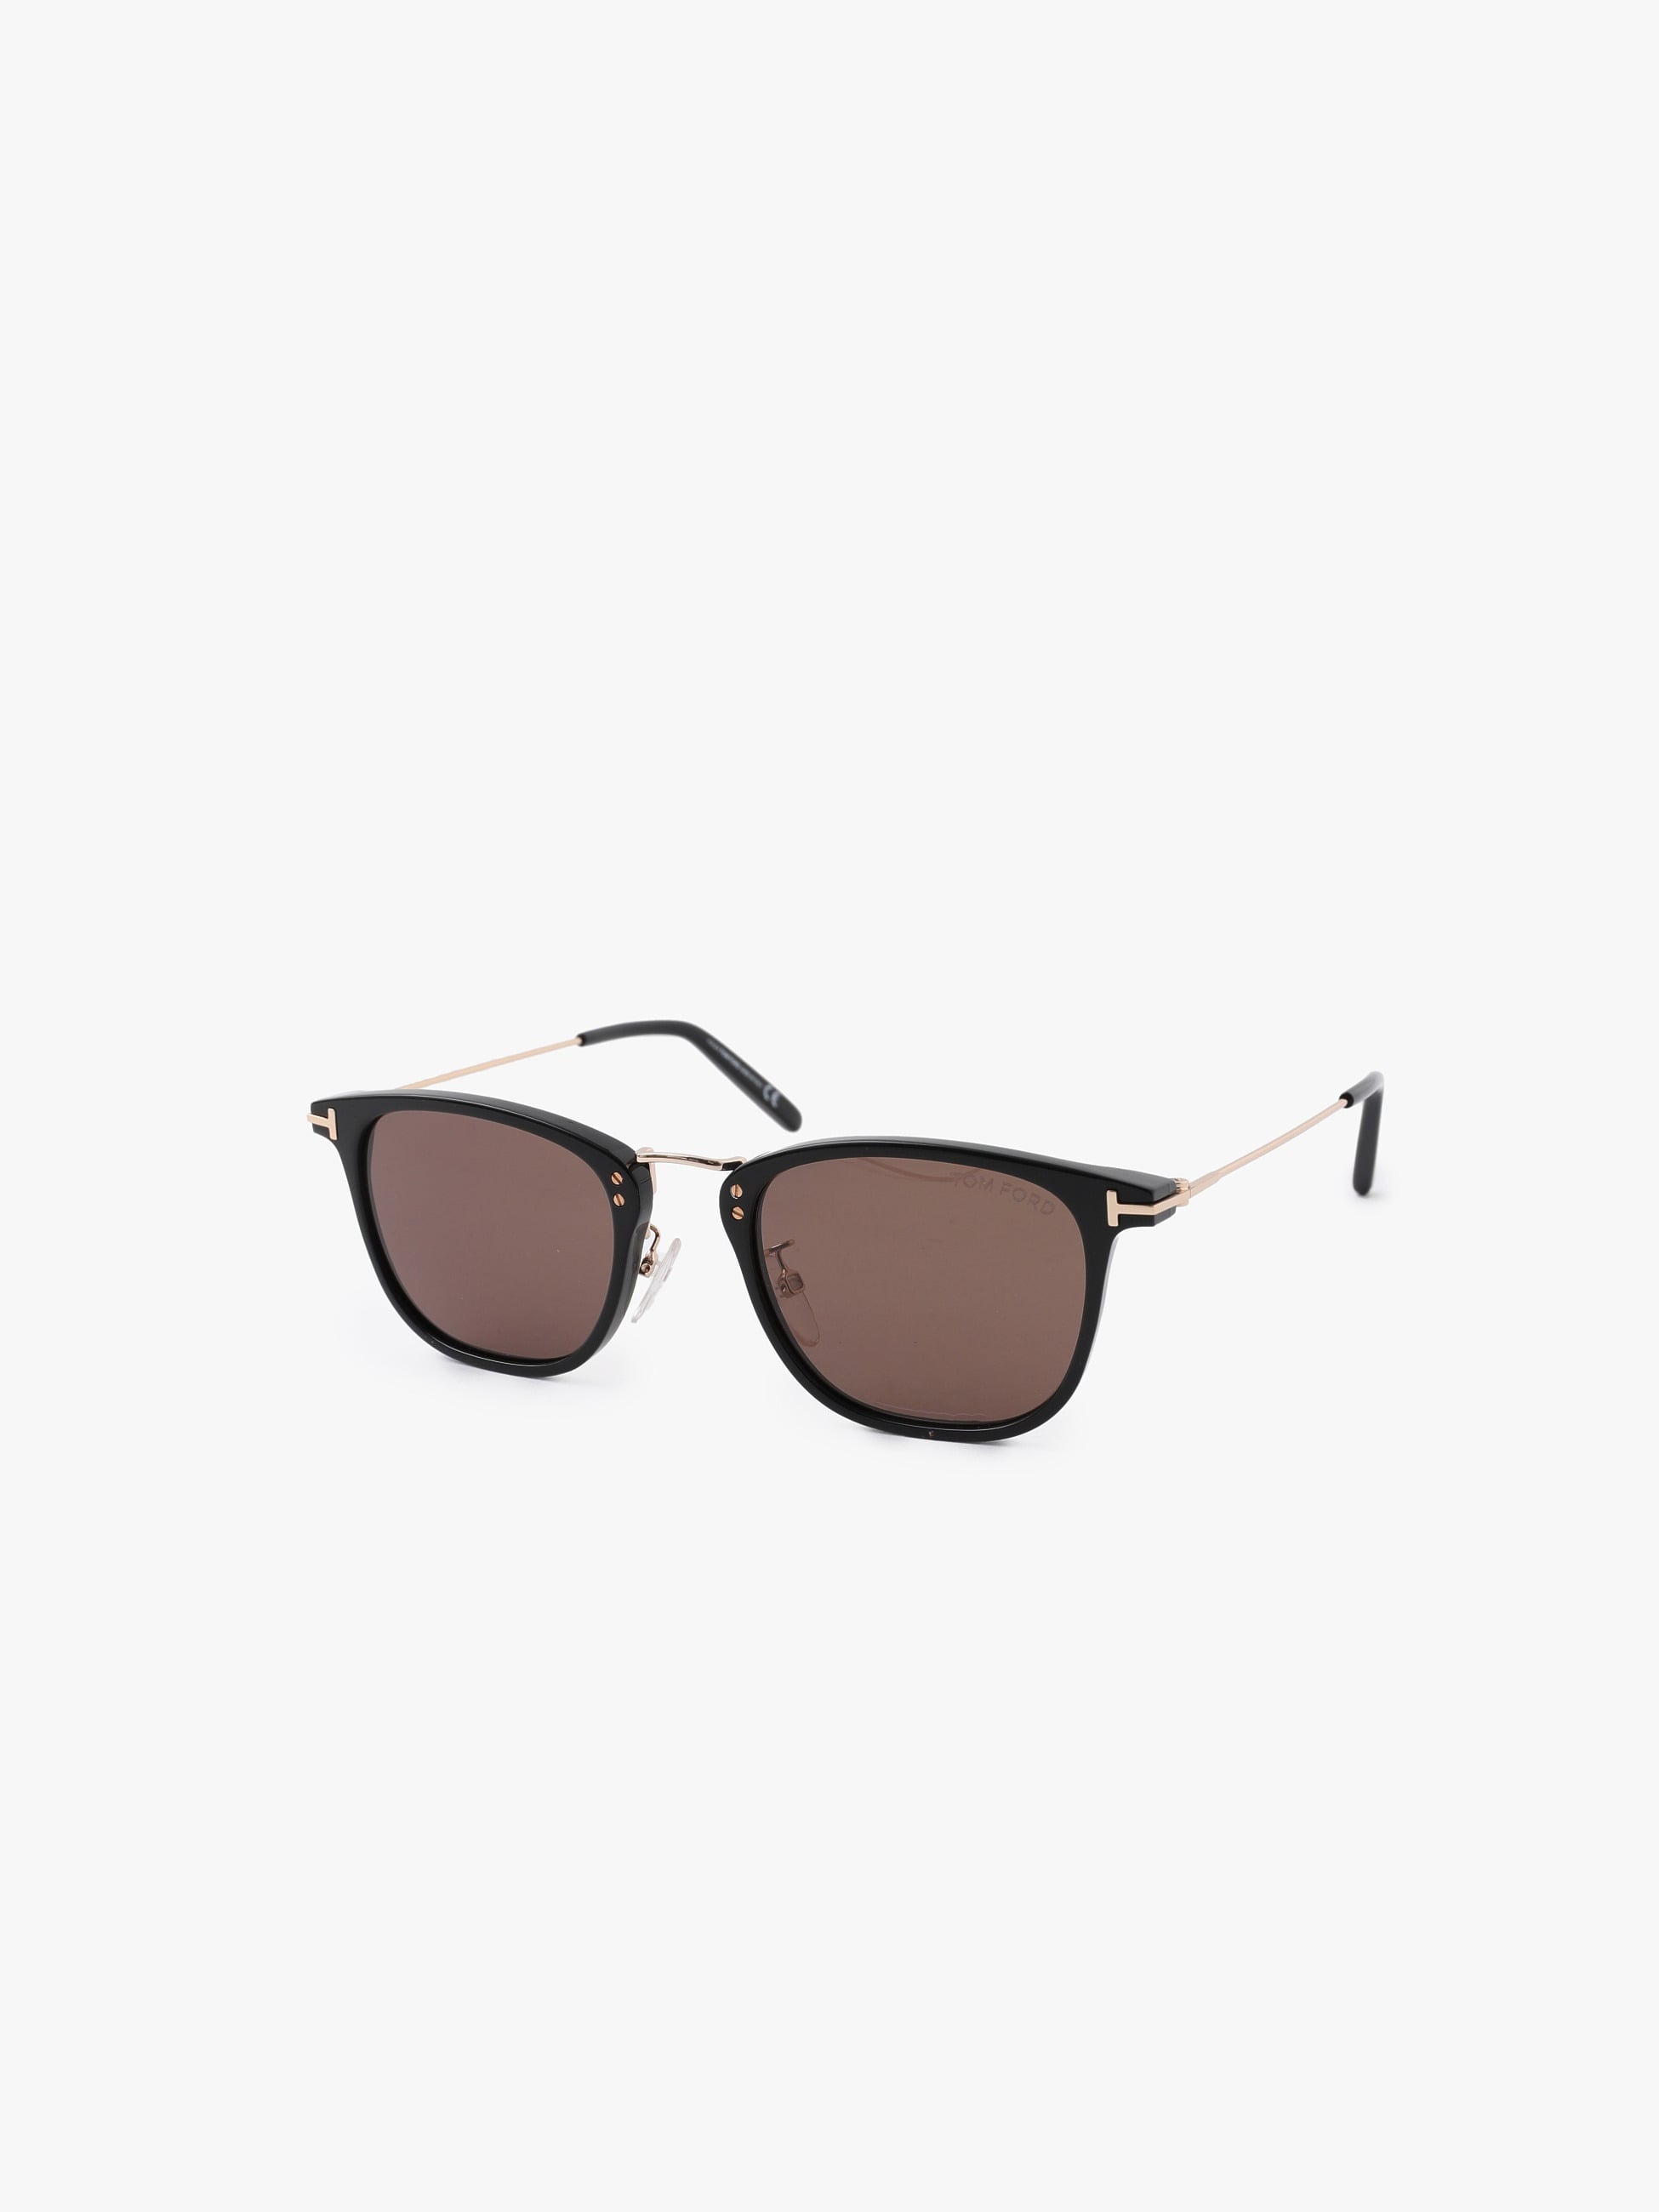 Sunglasses (FT0672)